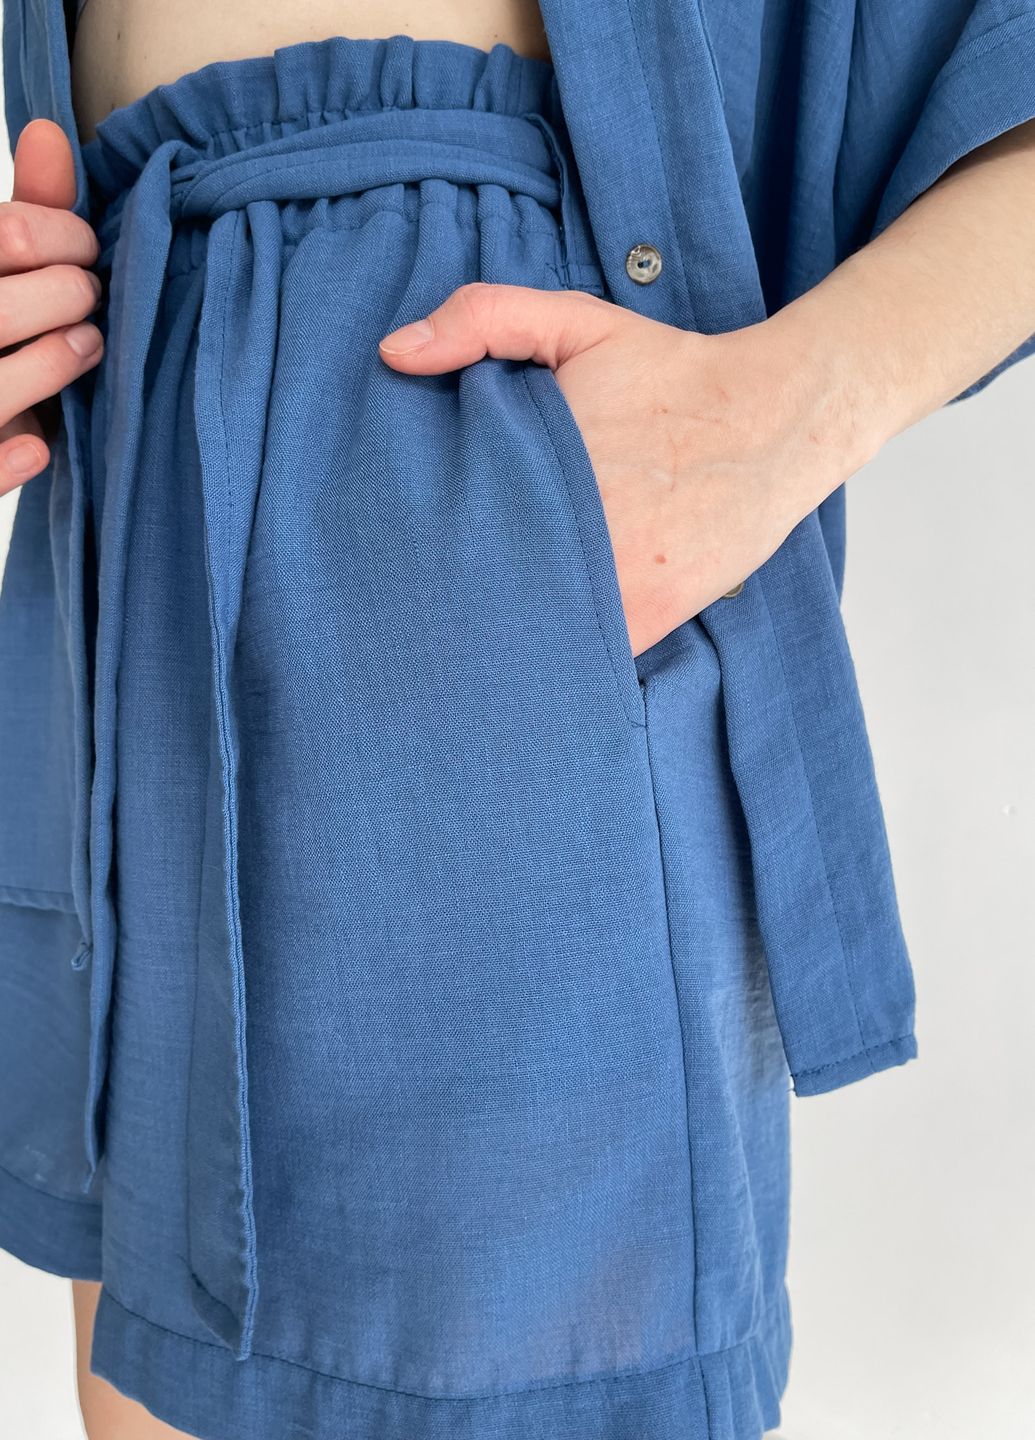 Купить Женские летние шорты бермуды с пояском из льна синие Merlini Карлино 300000143, размер 42-44 в интернет-магазине